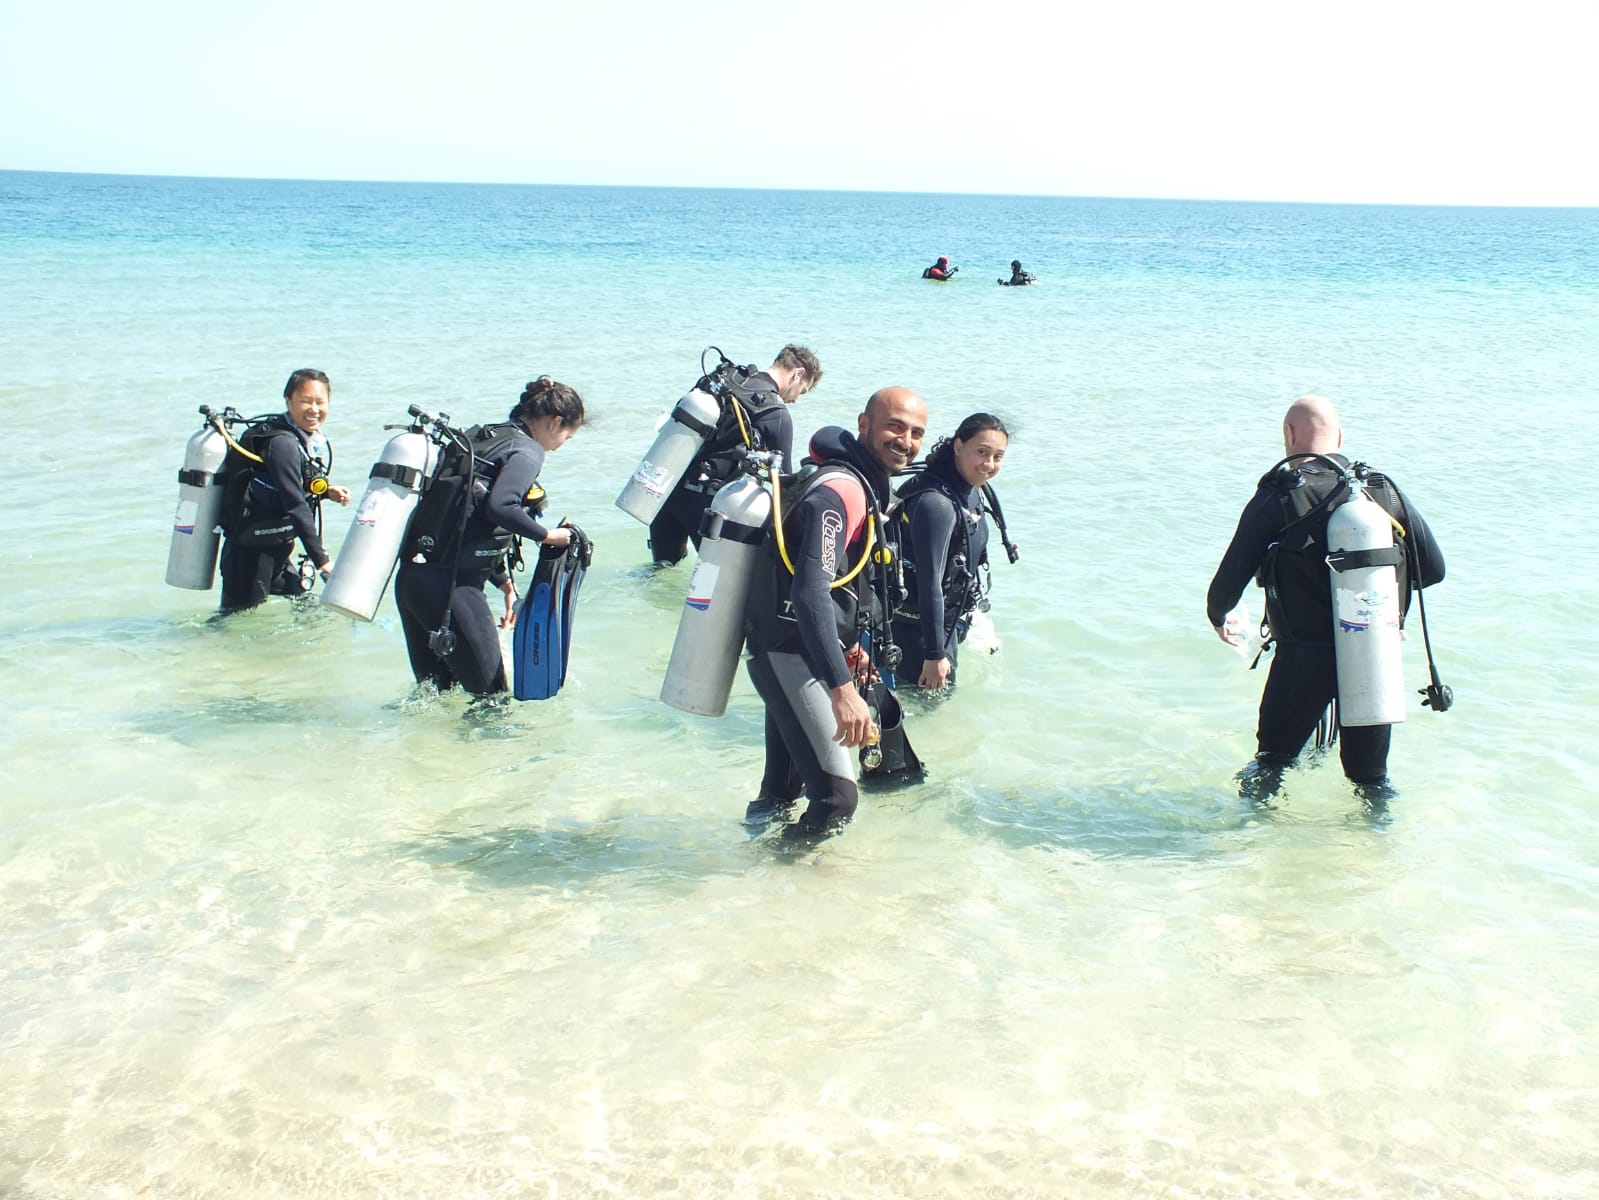 Become a Alghais diving member